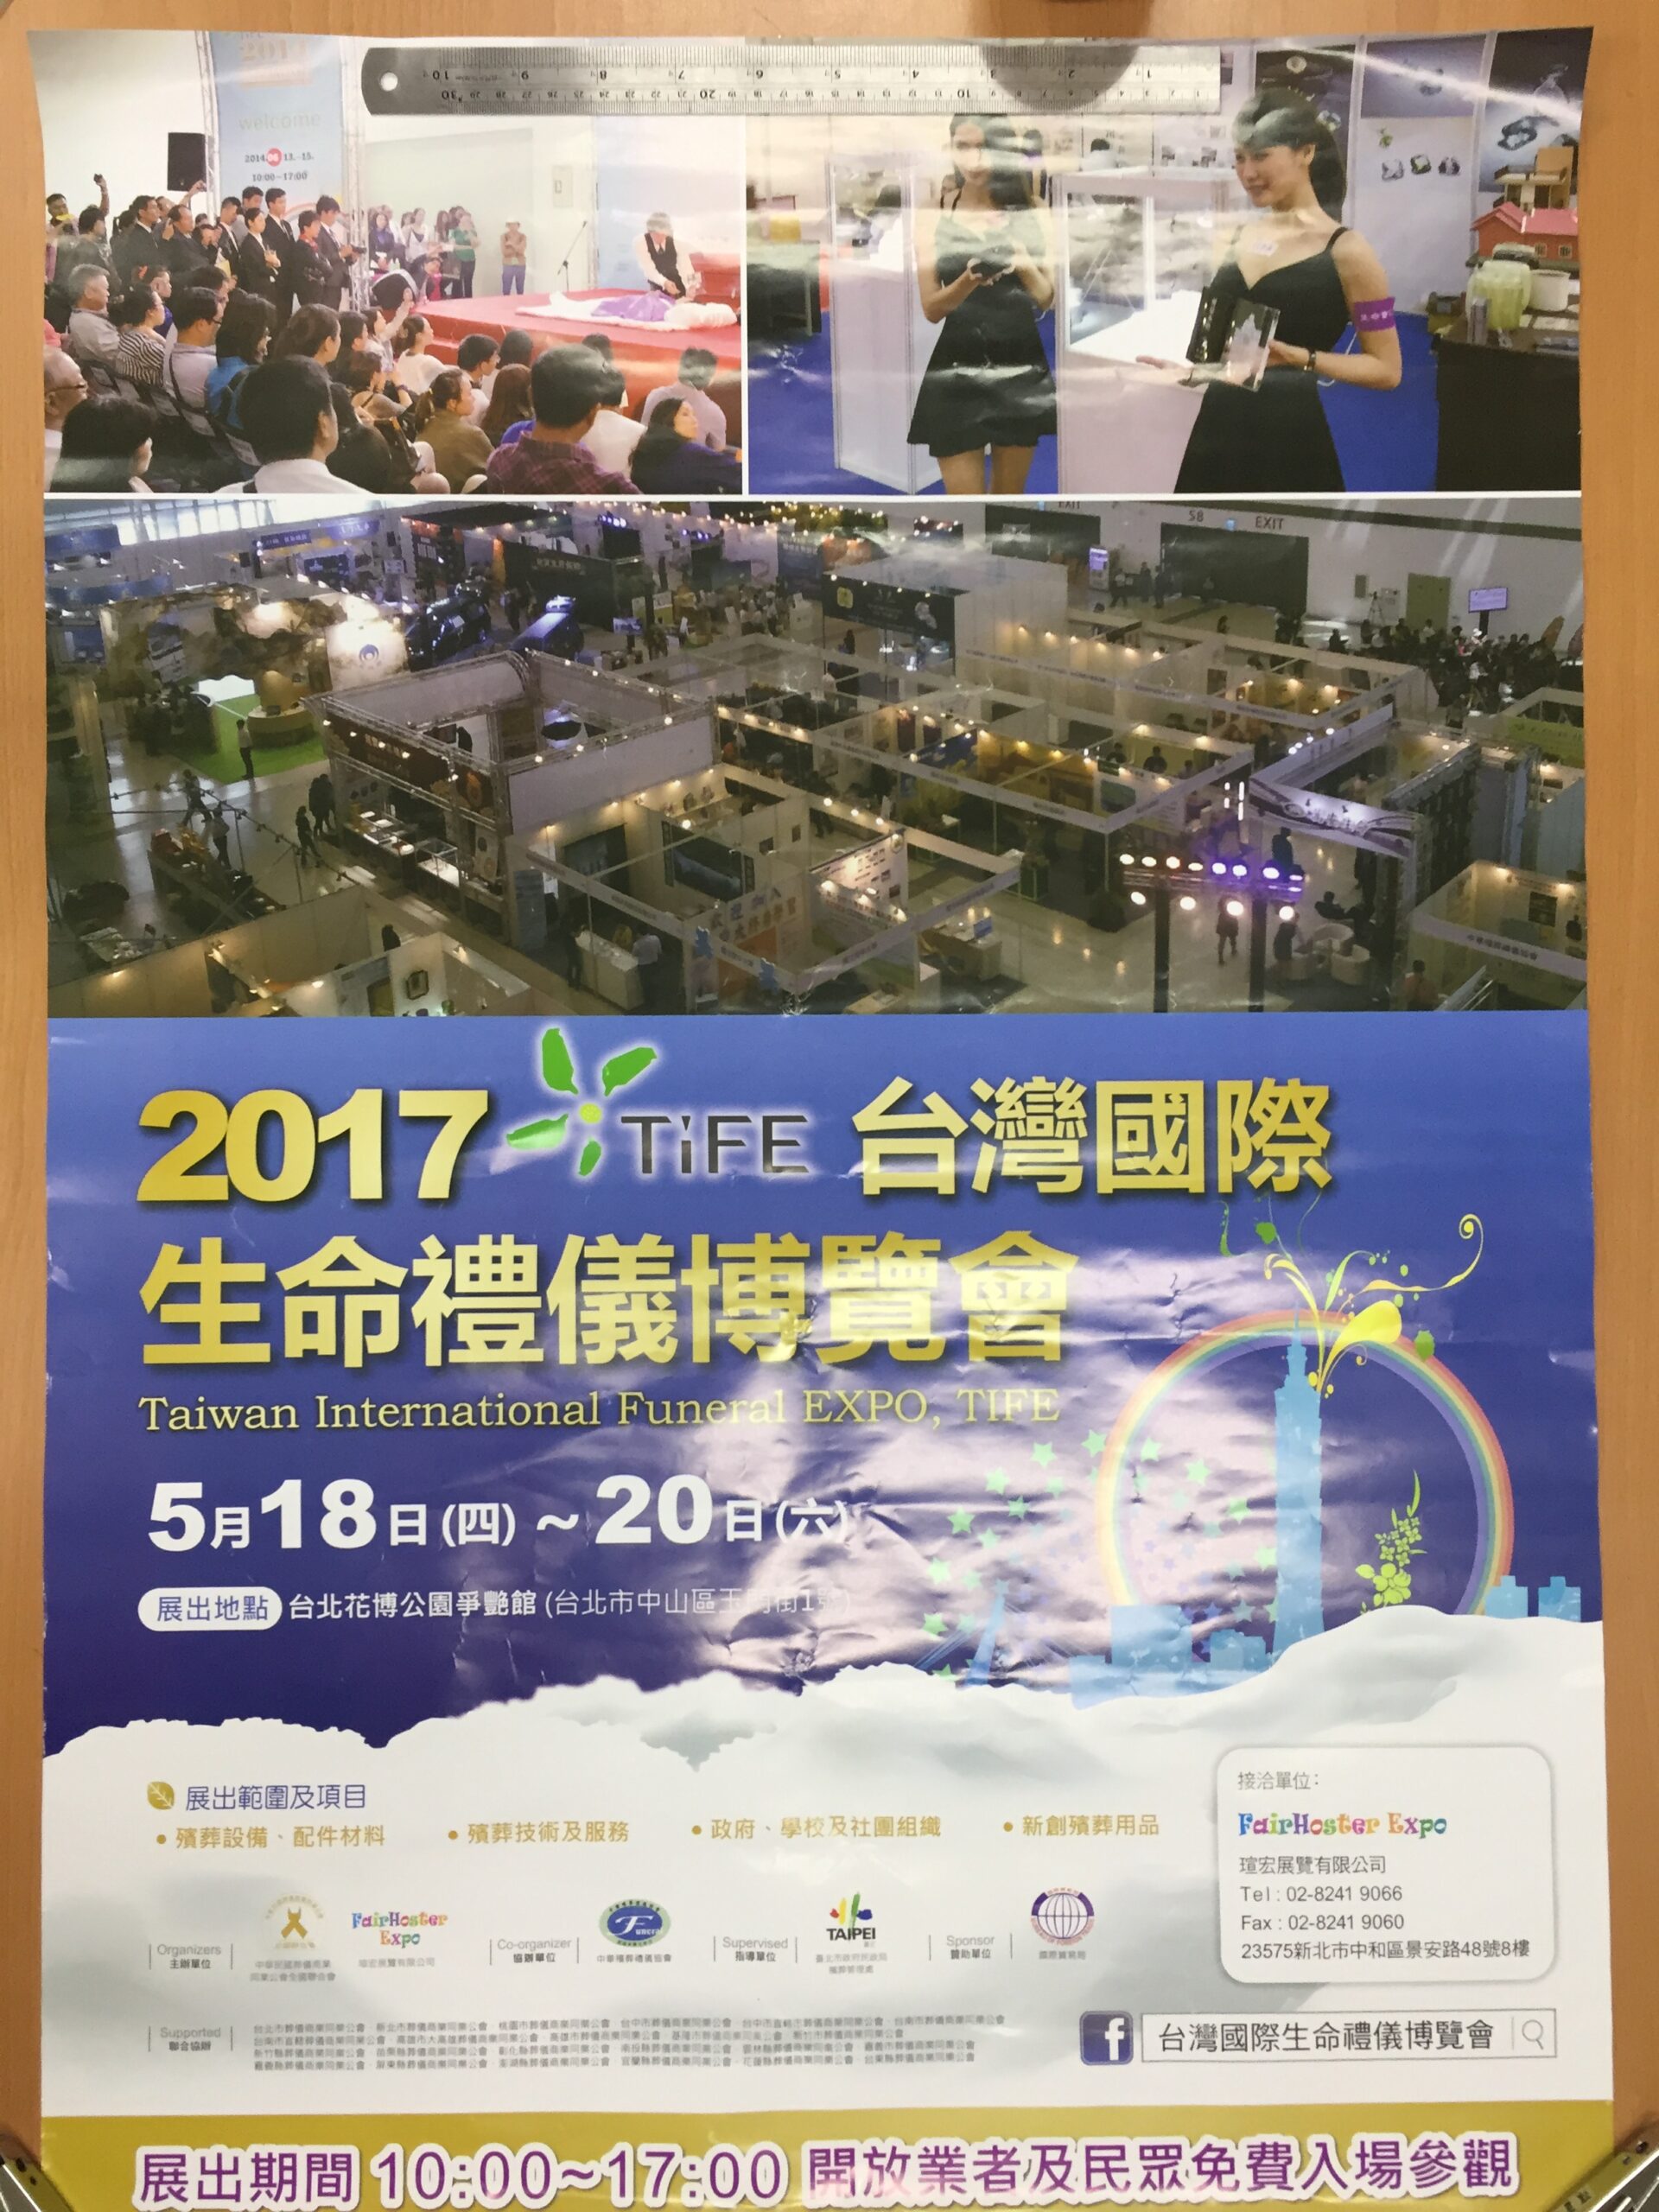 2017年台灣國際生命禮儀博覽會